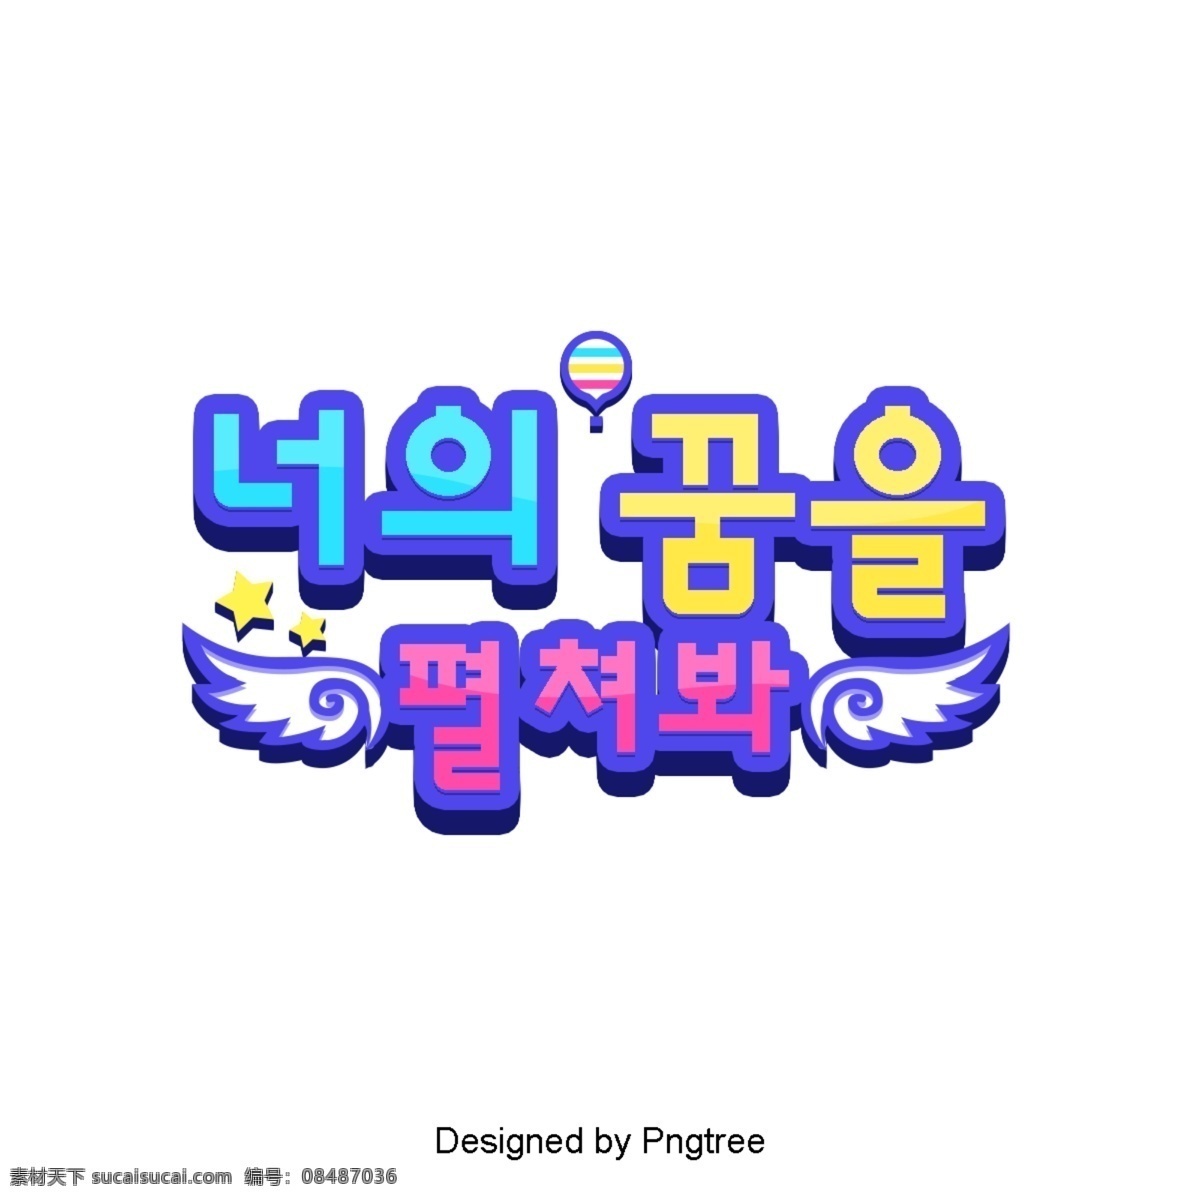 打开 梦想 看到 字体 清晰 韩国 卡通 场景 开放 新鲜 翅膀 白色和蓝色 黄色 紫蓝色